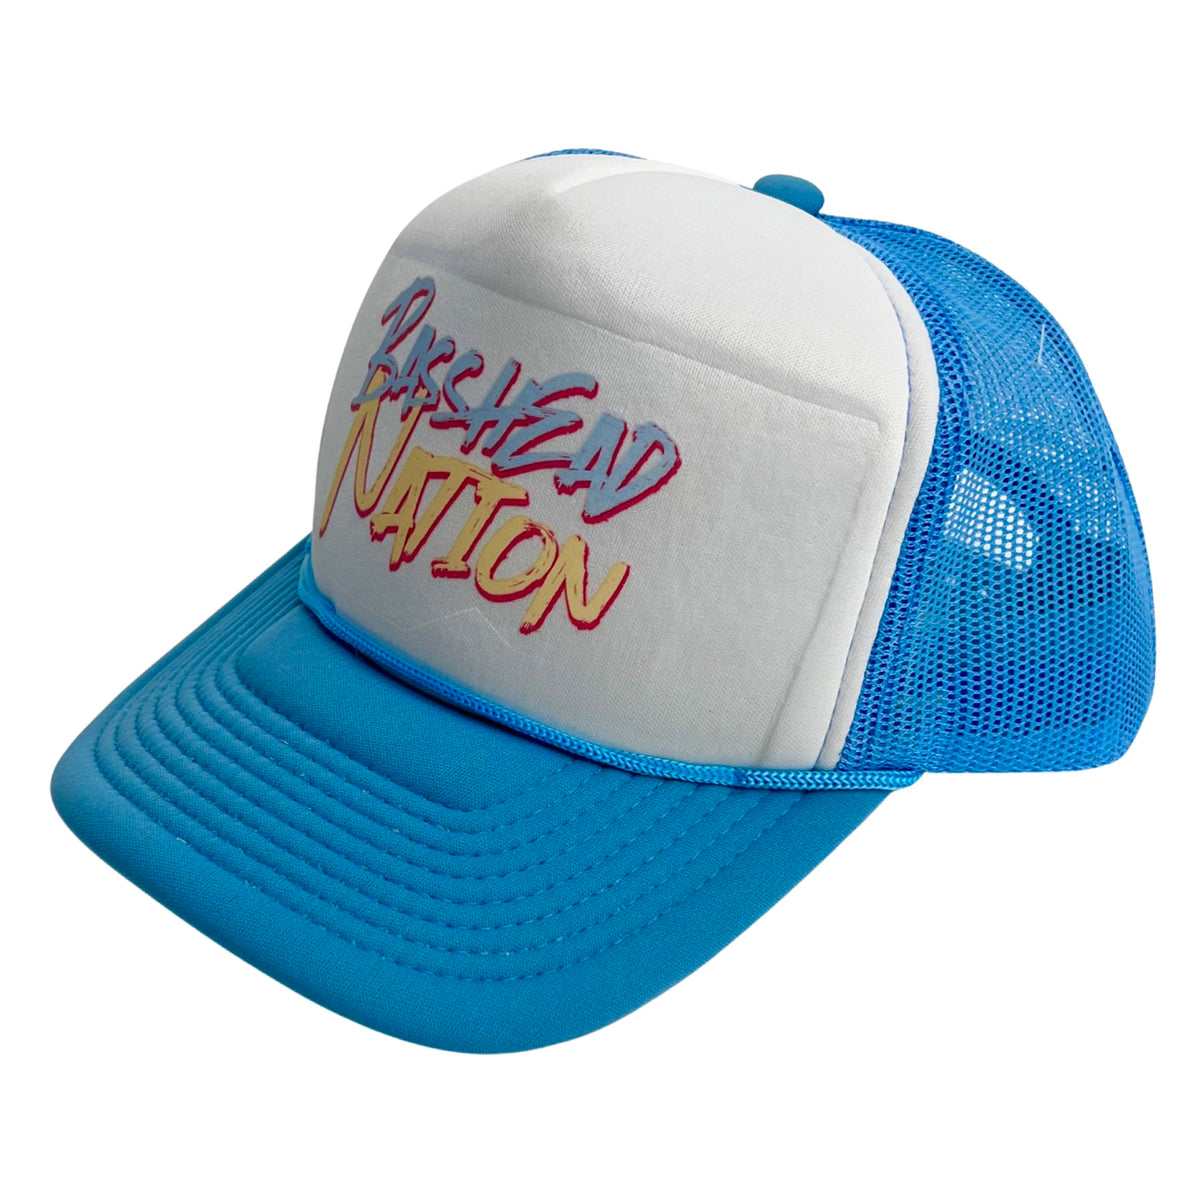 Basshead Nation Trucker Hat